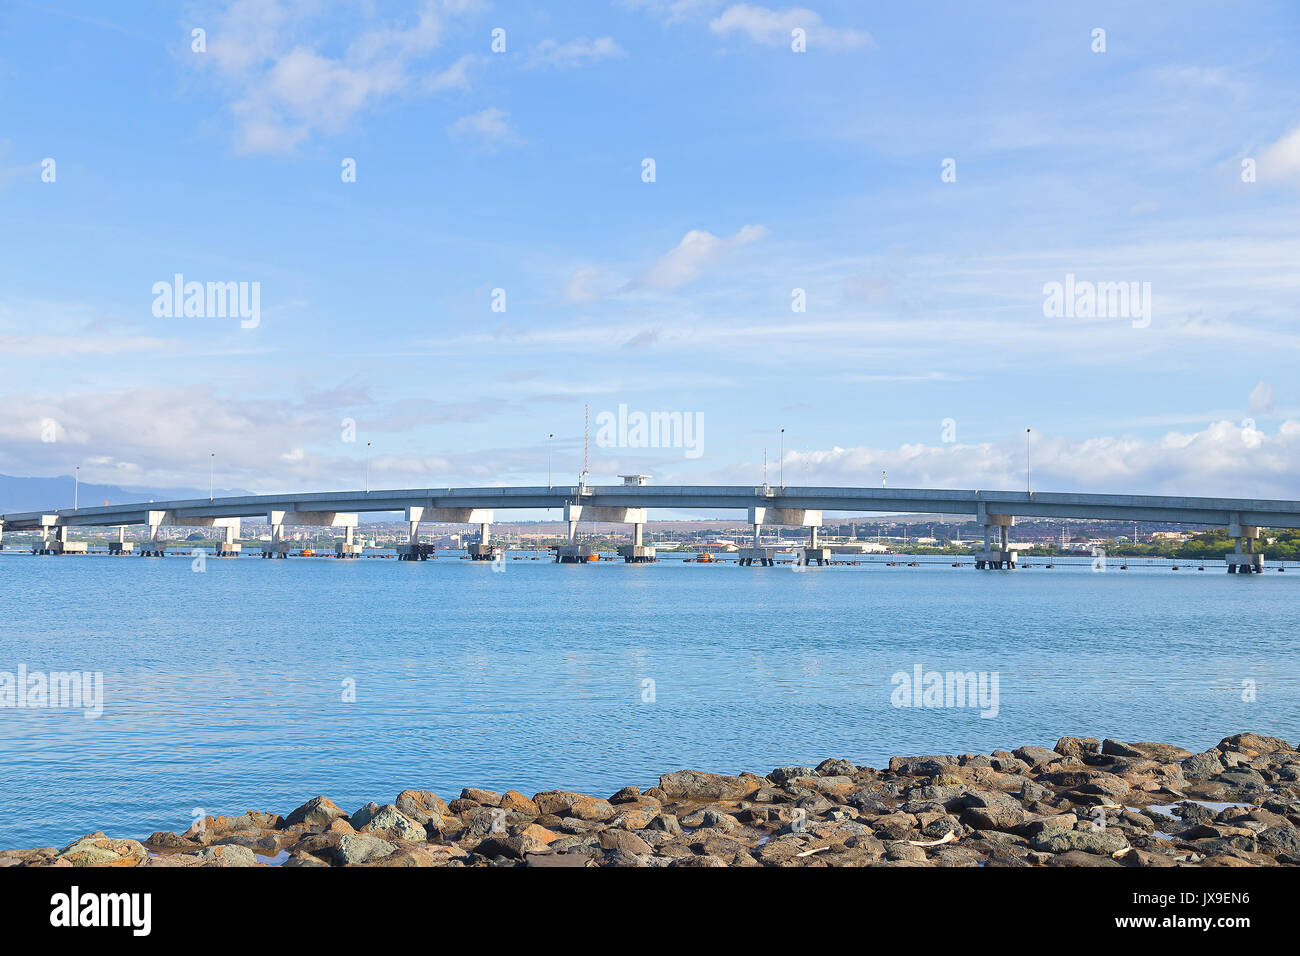 Admiralty Clarey Brücke, Ford Insel, Pearl Harbor, Hawaii. Bridge Blick vom Ufer Steine an einem sonnigen Tag. Stockfoto